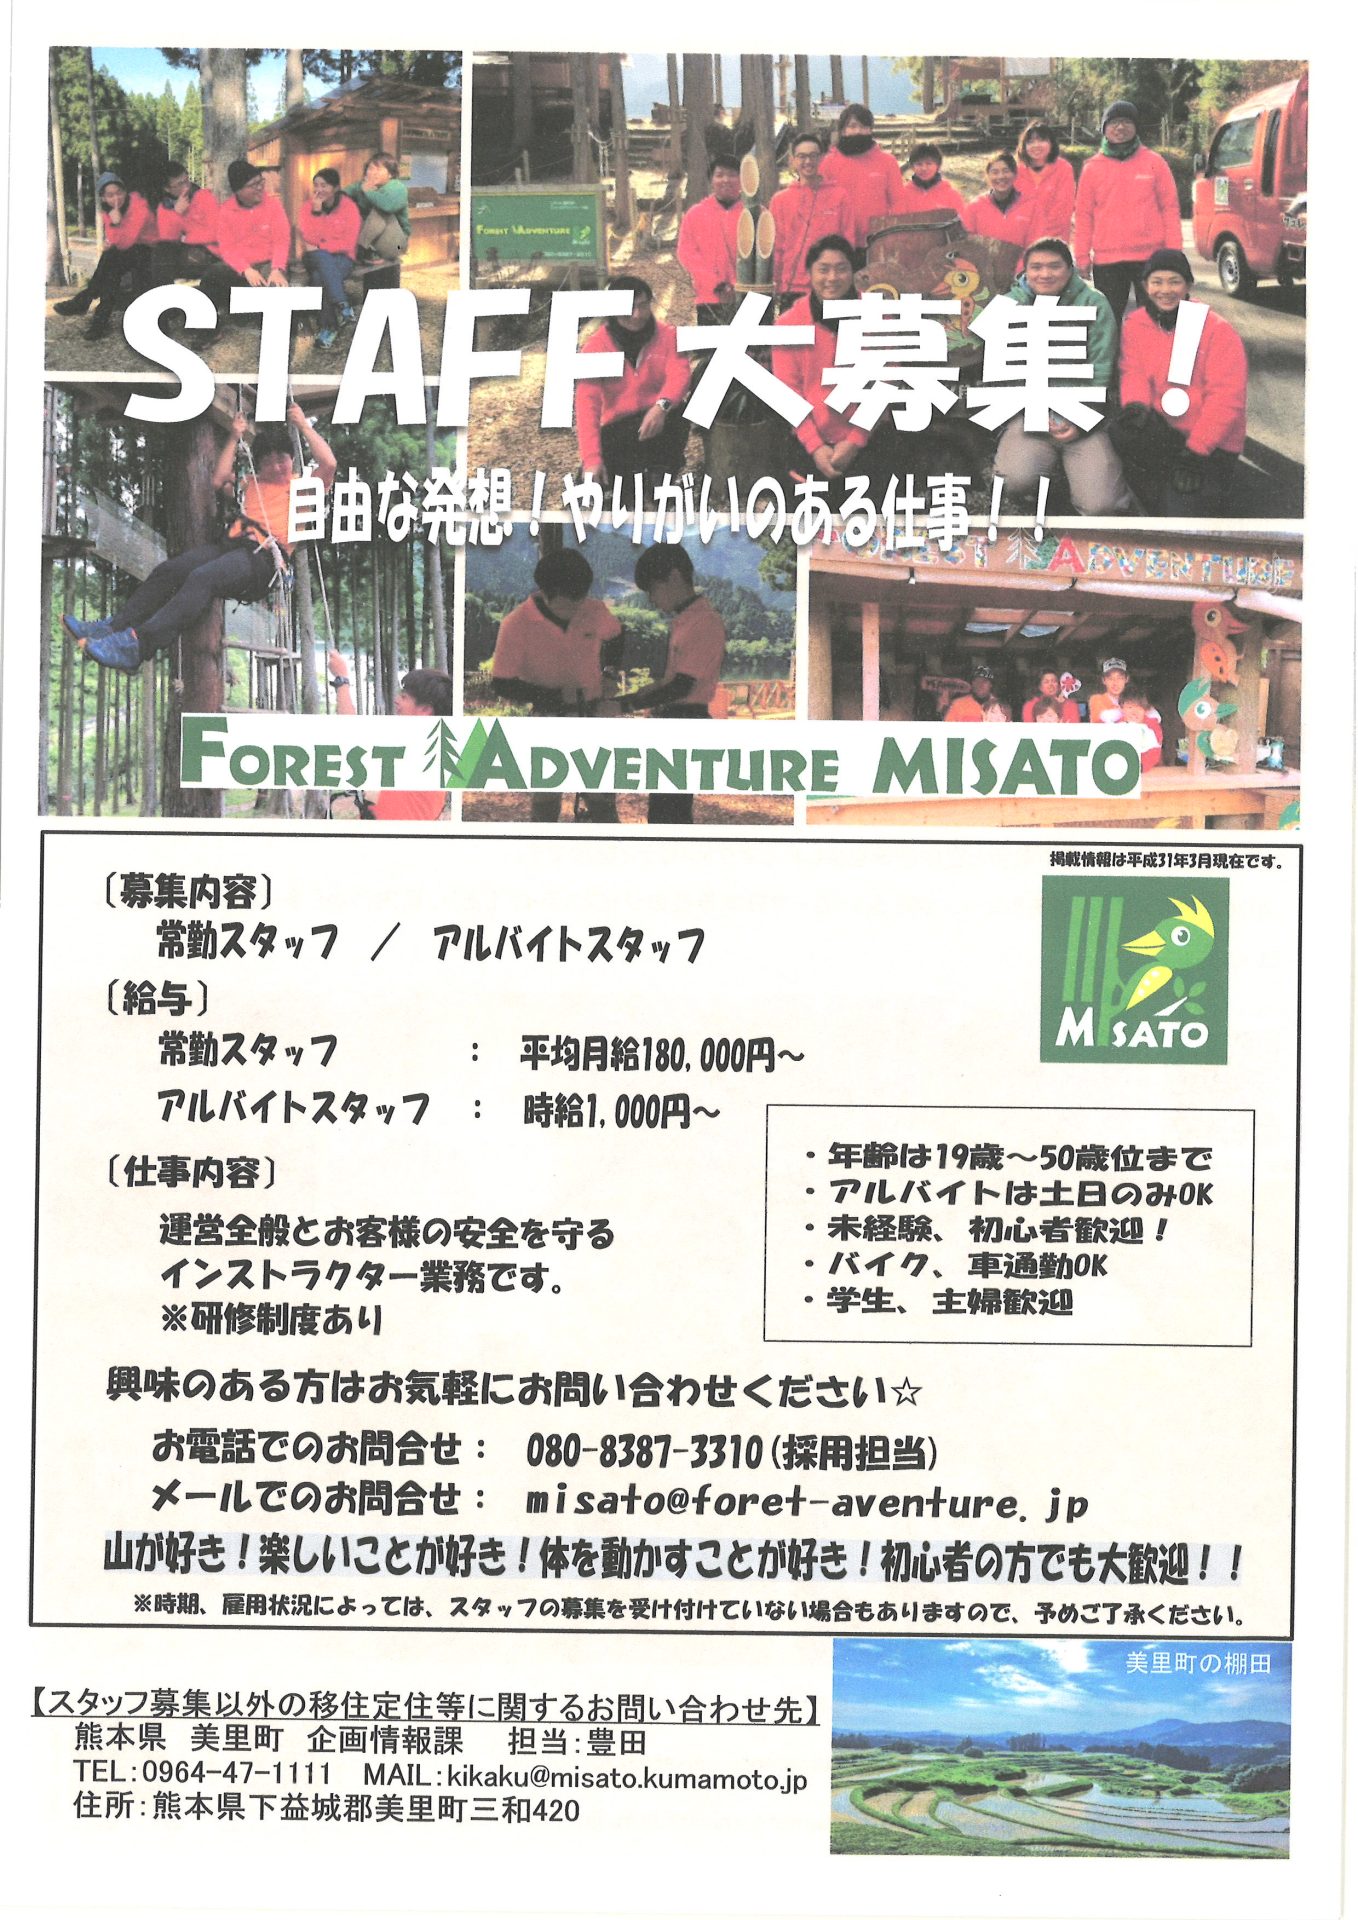 美里町「FOREST ADVENTURE MISATO」で働いてみませんか？ | 地域のトピックス